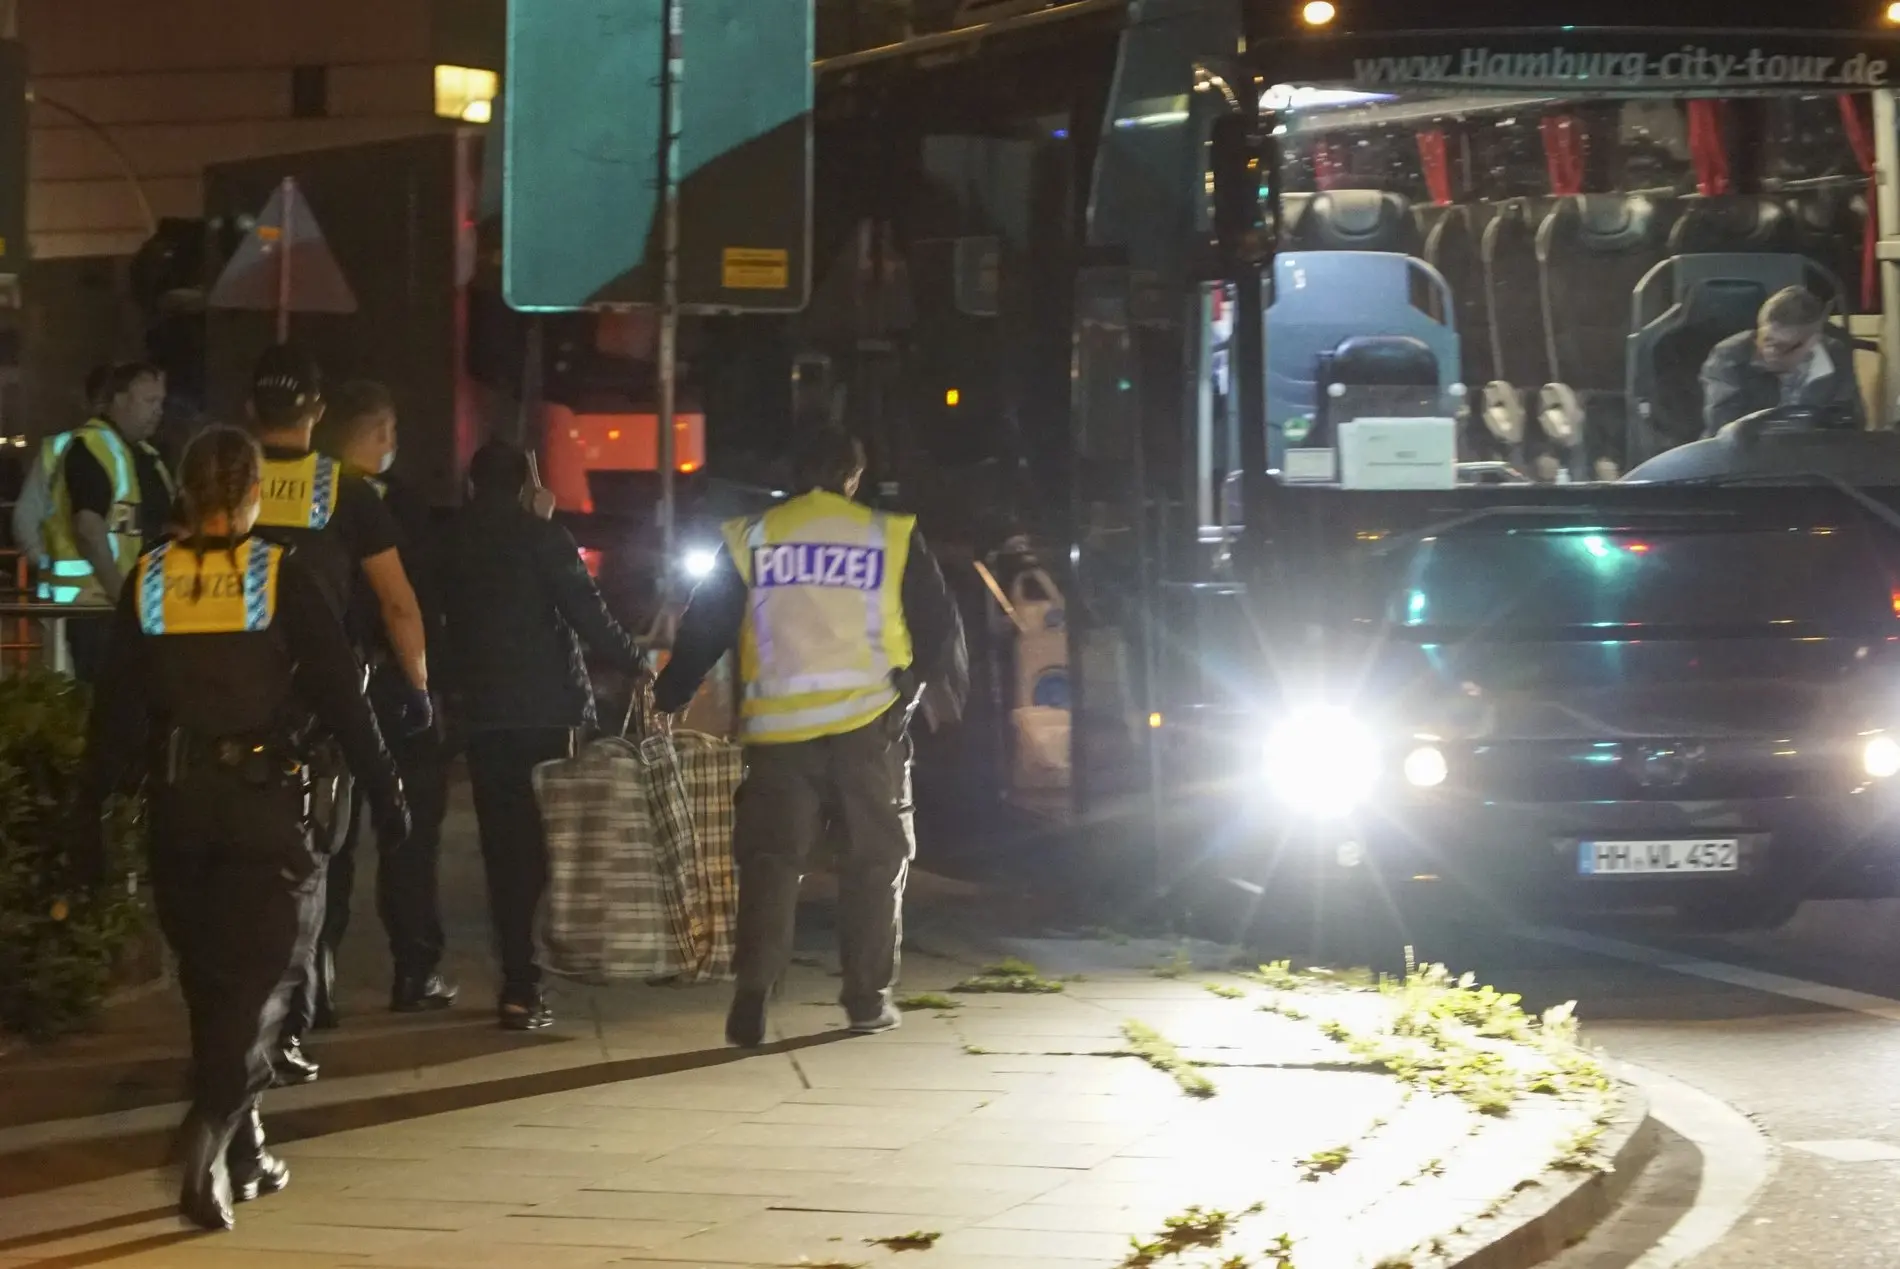 Polizisten in Uniform laufen in der Nacht auf einen Bus am Straßenrand zu.